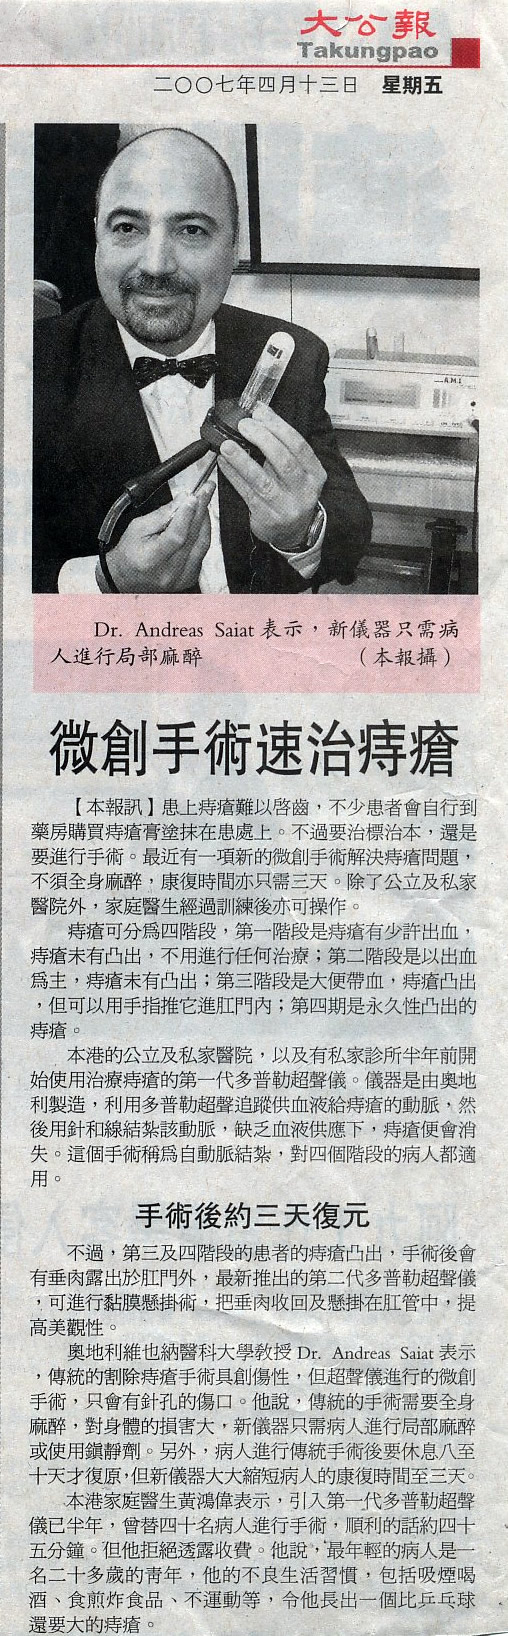 hong kong haemorrhoid centre newspaper15